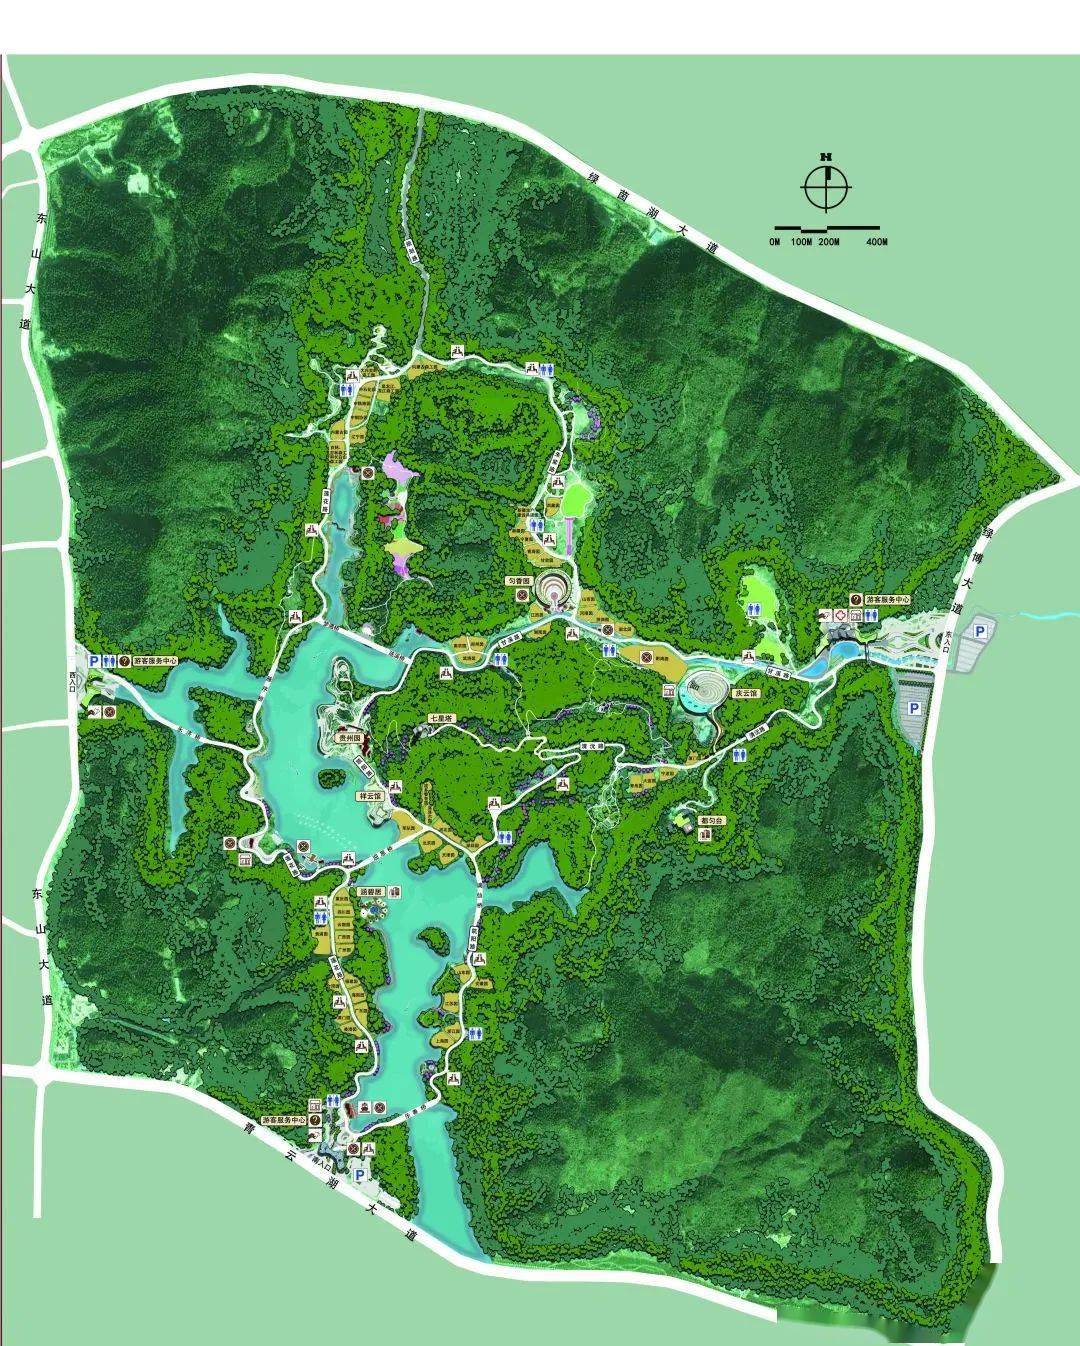 南京绿博园平面图图片